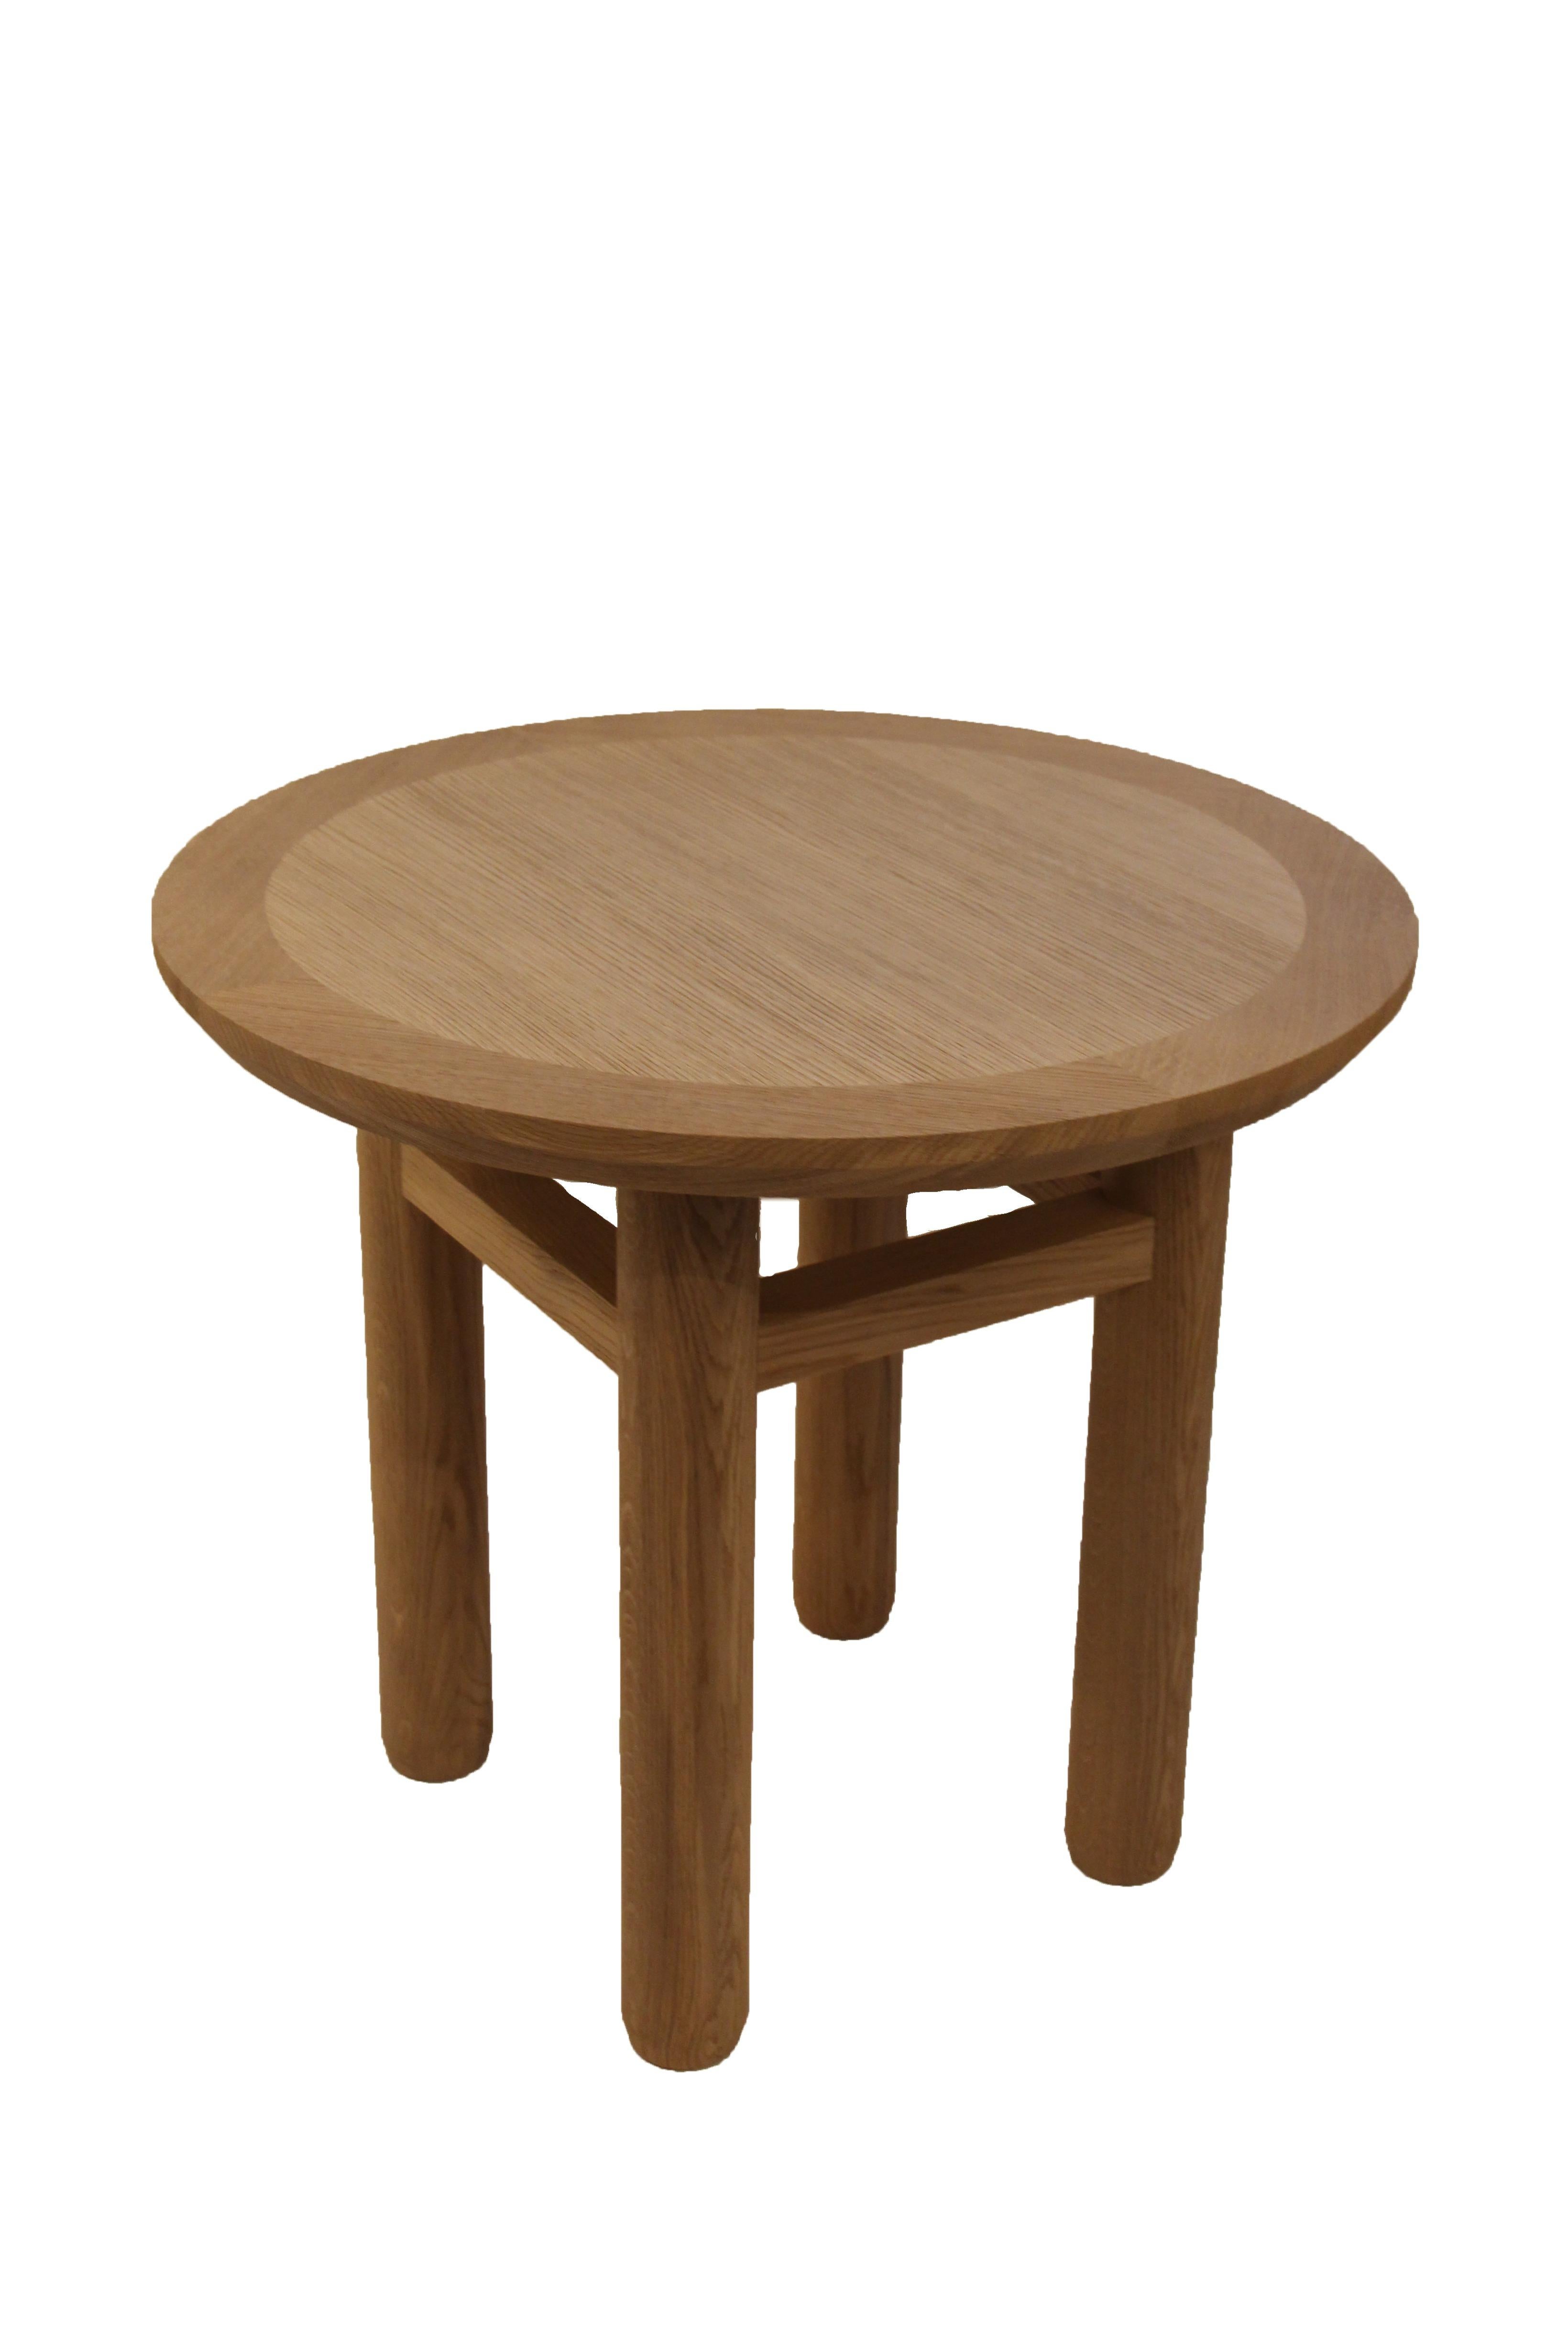 La table ronde Thouars, en chêne brossé, est conçue par le collectif Atelier Linné en 2013. Il se caractérise par un plateau rond en chêne massif et une base composée de 4 pieds ronds encastrés reliés par une entretoise carrée.

Atelier Linné est un